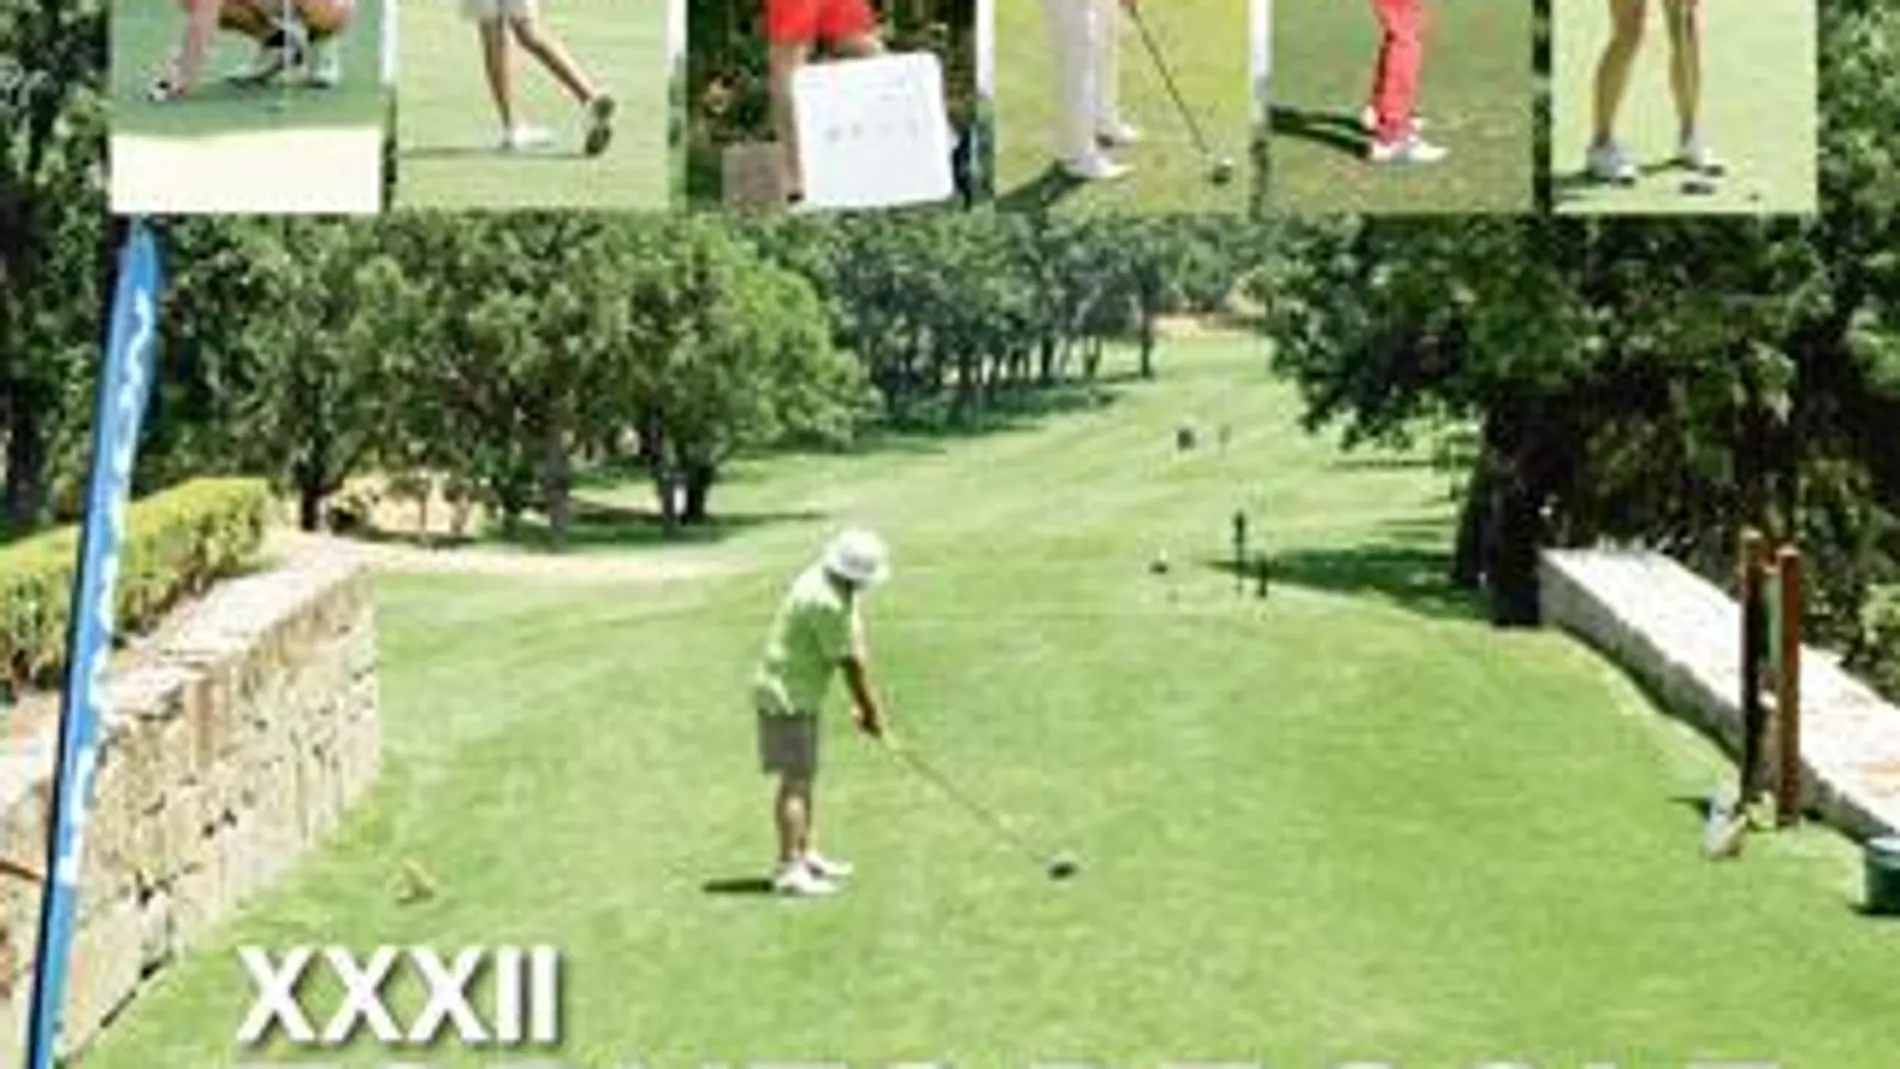 XXXII Torneo de Golf